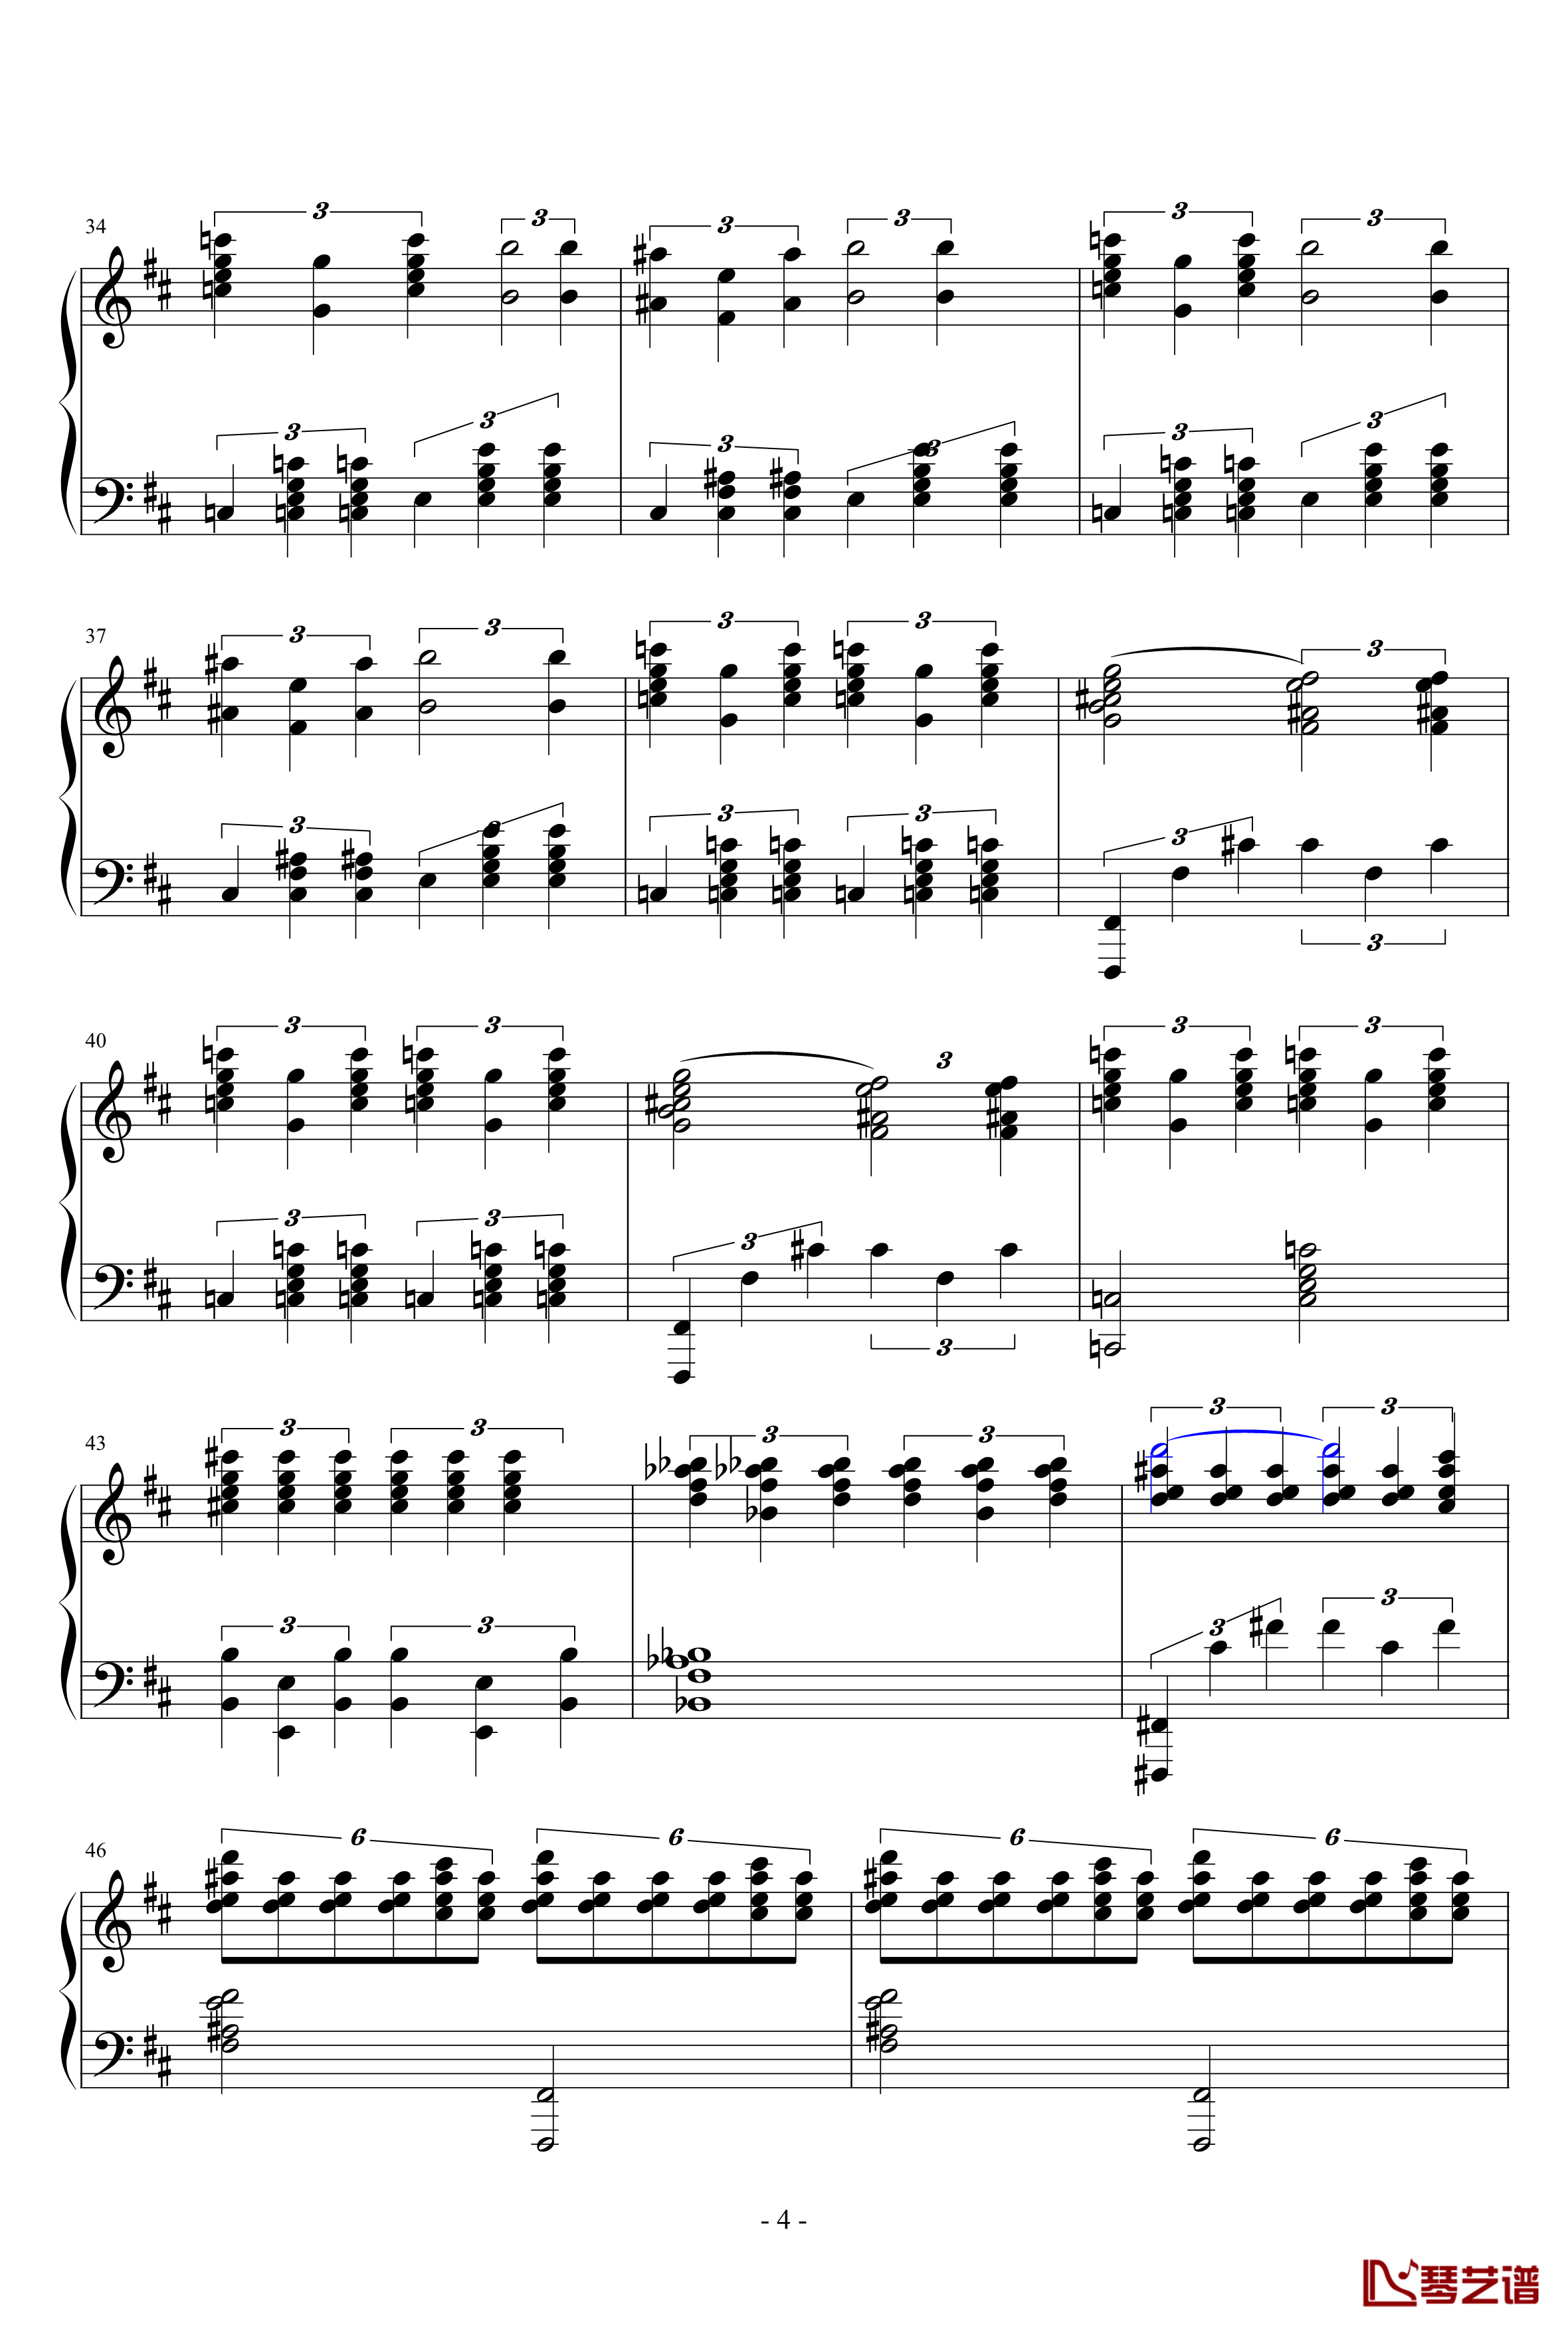 天鹅湖场景旋律钢琴谱-柴科夫斯基-Peter Ilyich Tchaikovsky4